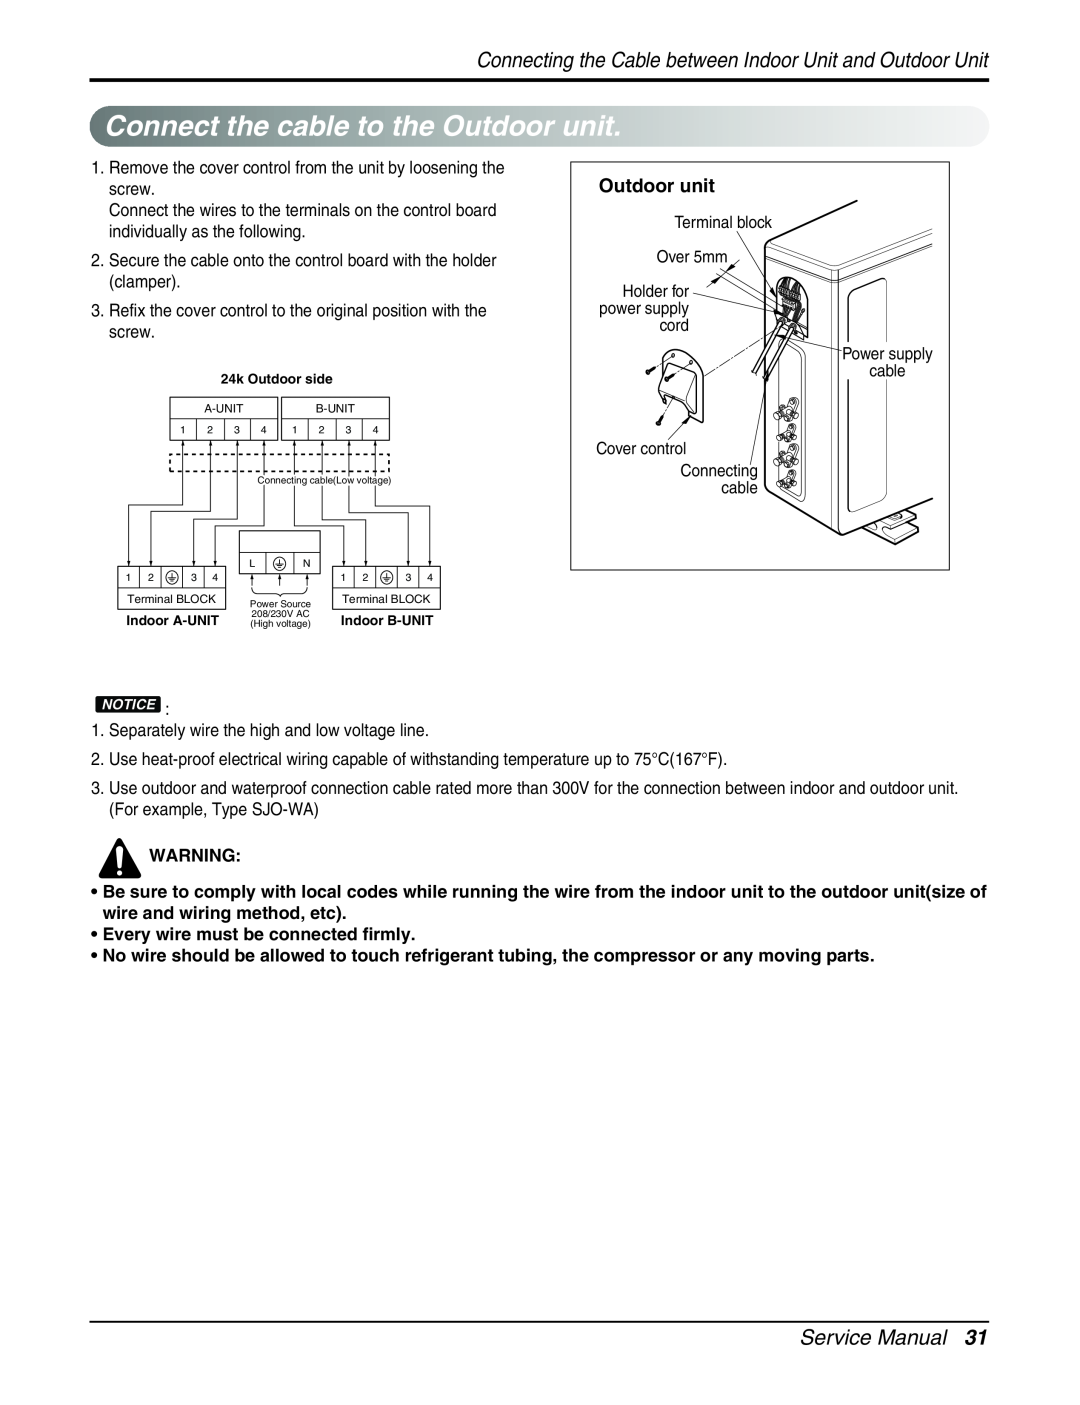 LG Electronics AMNC093APM0(LMAN090CNS), AMNH123APM0(LMAN120HNS) Connectthe cabletotheOutdoor unit, Service Manual 